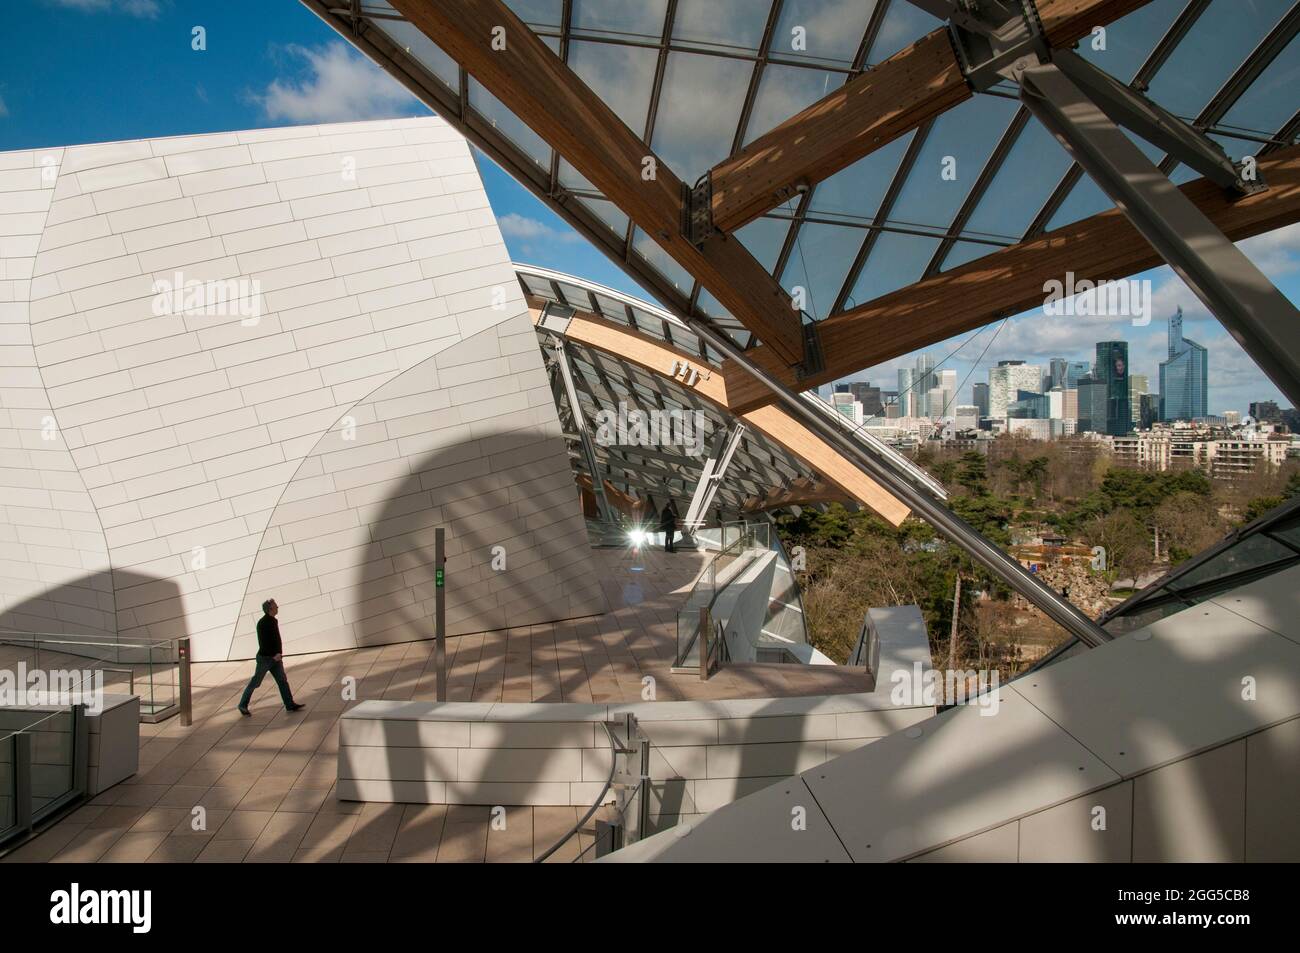 Paris, France. New Contemporary Arts Museum Building the Fondation Louis  Vuitton, in Bois de Boulogne Parks, (Credit Architect: Fred Gehry),  Tourists Outside, designer label, UNUSUAL PARIS, glass building france  Stock Photo 